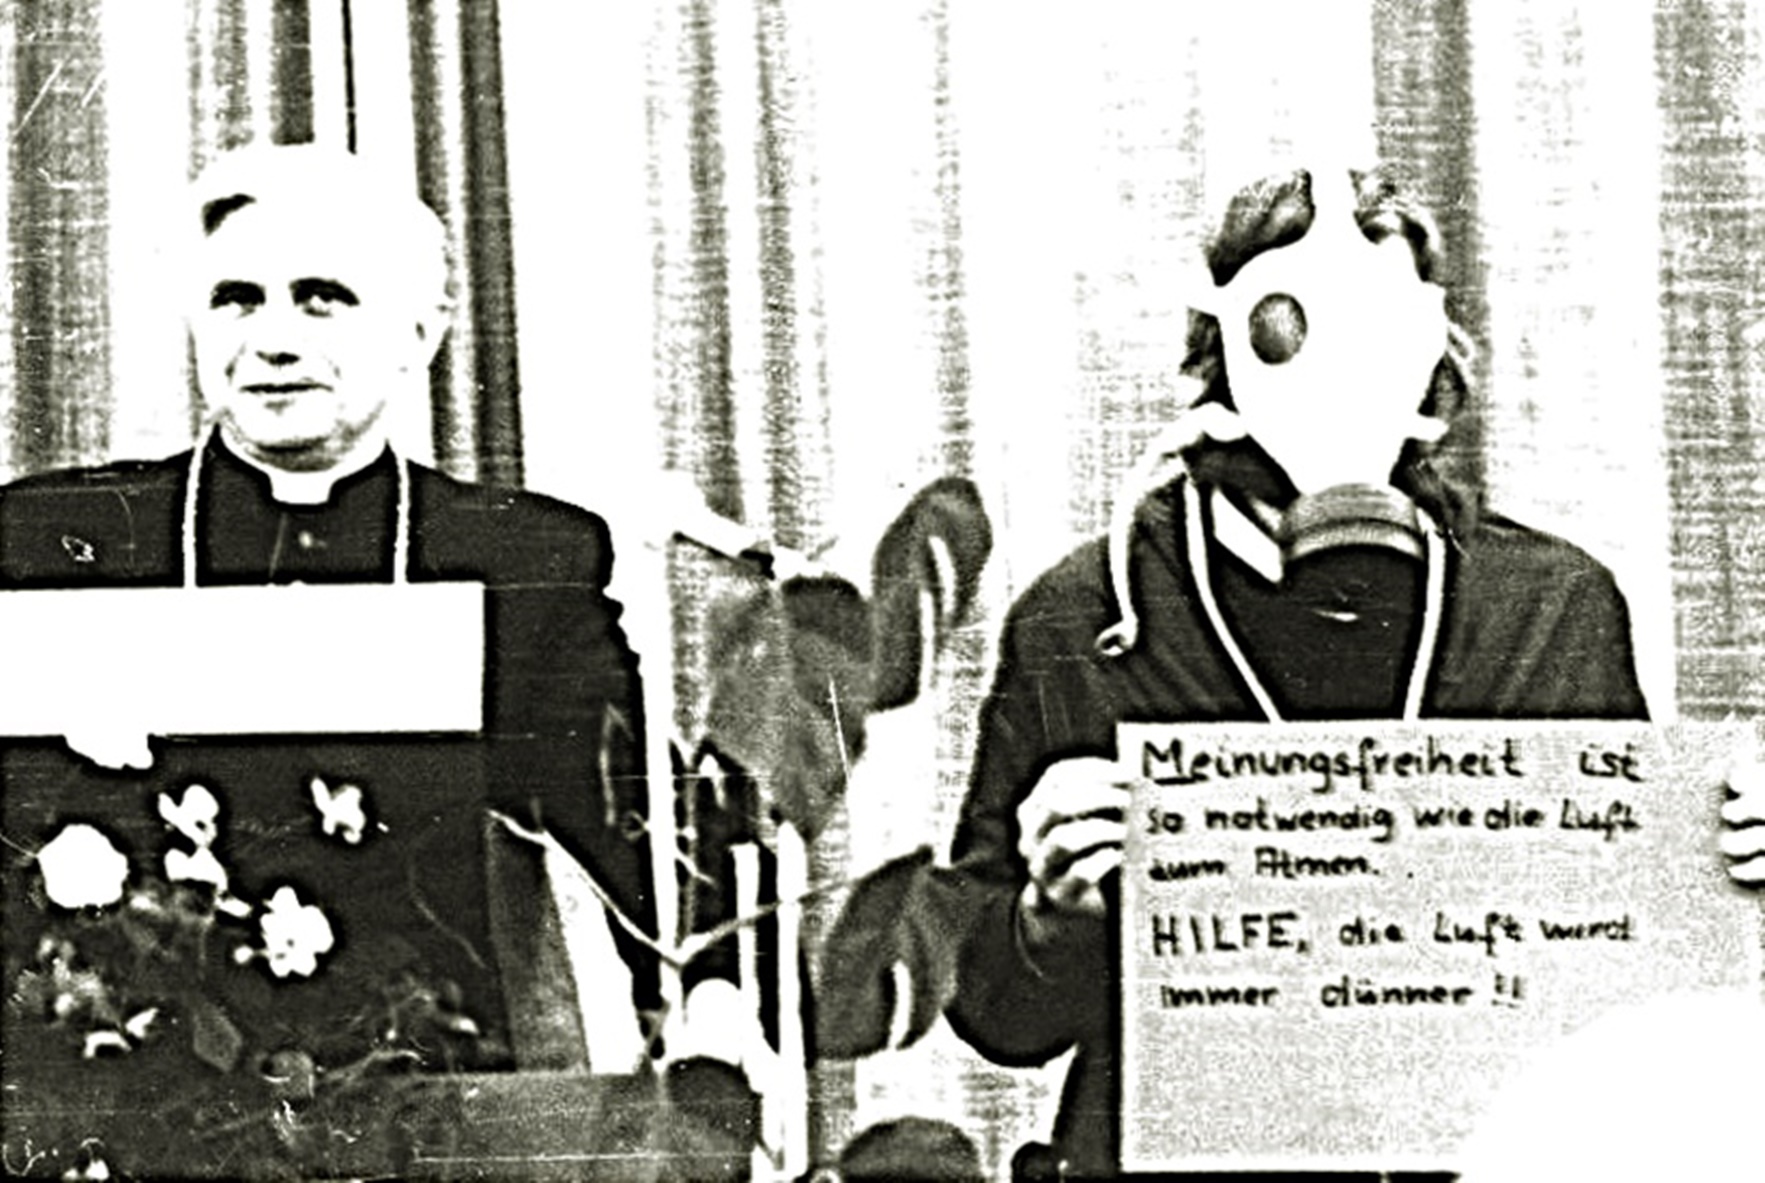 Erzbischof Ratzinger an der Katholischen Stiftungsfachhochschule München, 1978. Auf dem Schild des "verirrten jungen Mannes" (so Ratzinger in seiner Rede) steht: "Meinungsfreiheit ist so wichtig wie die Luft zum Atmen. HILFE, die Luft wird immer dünner". (Foto: privat)